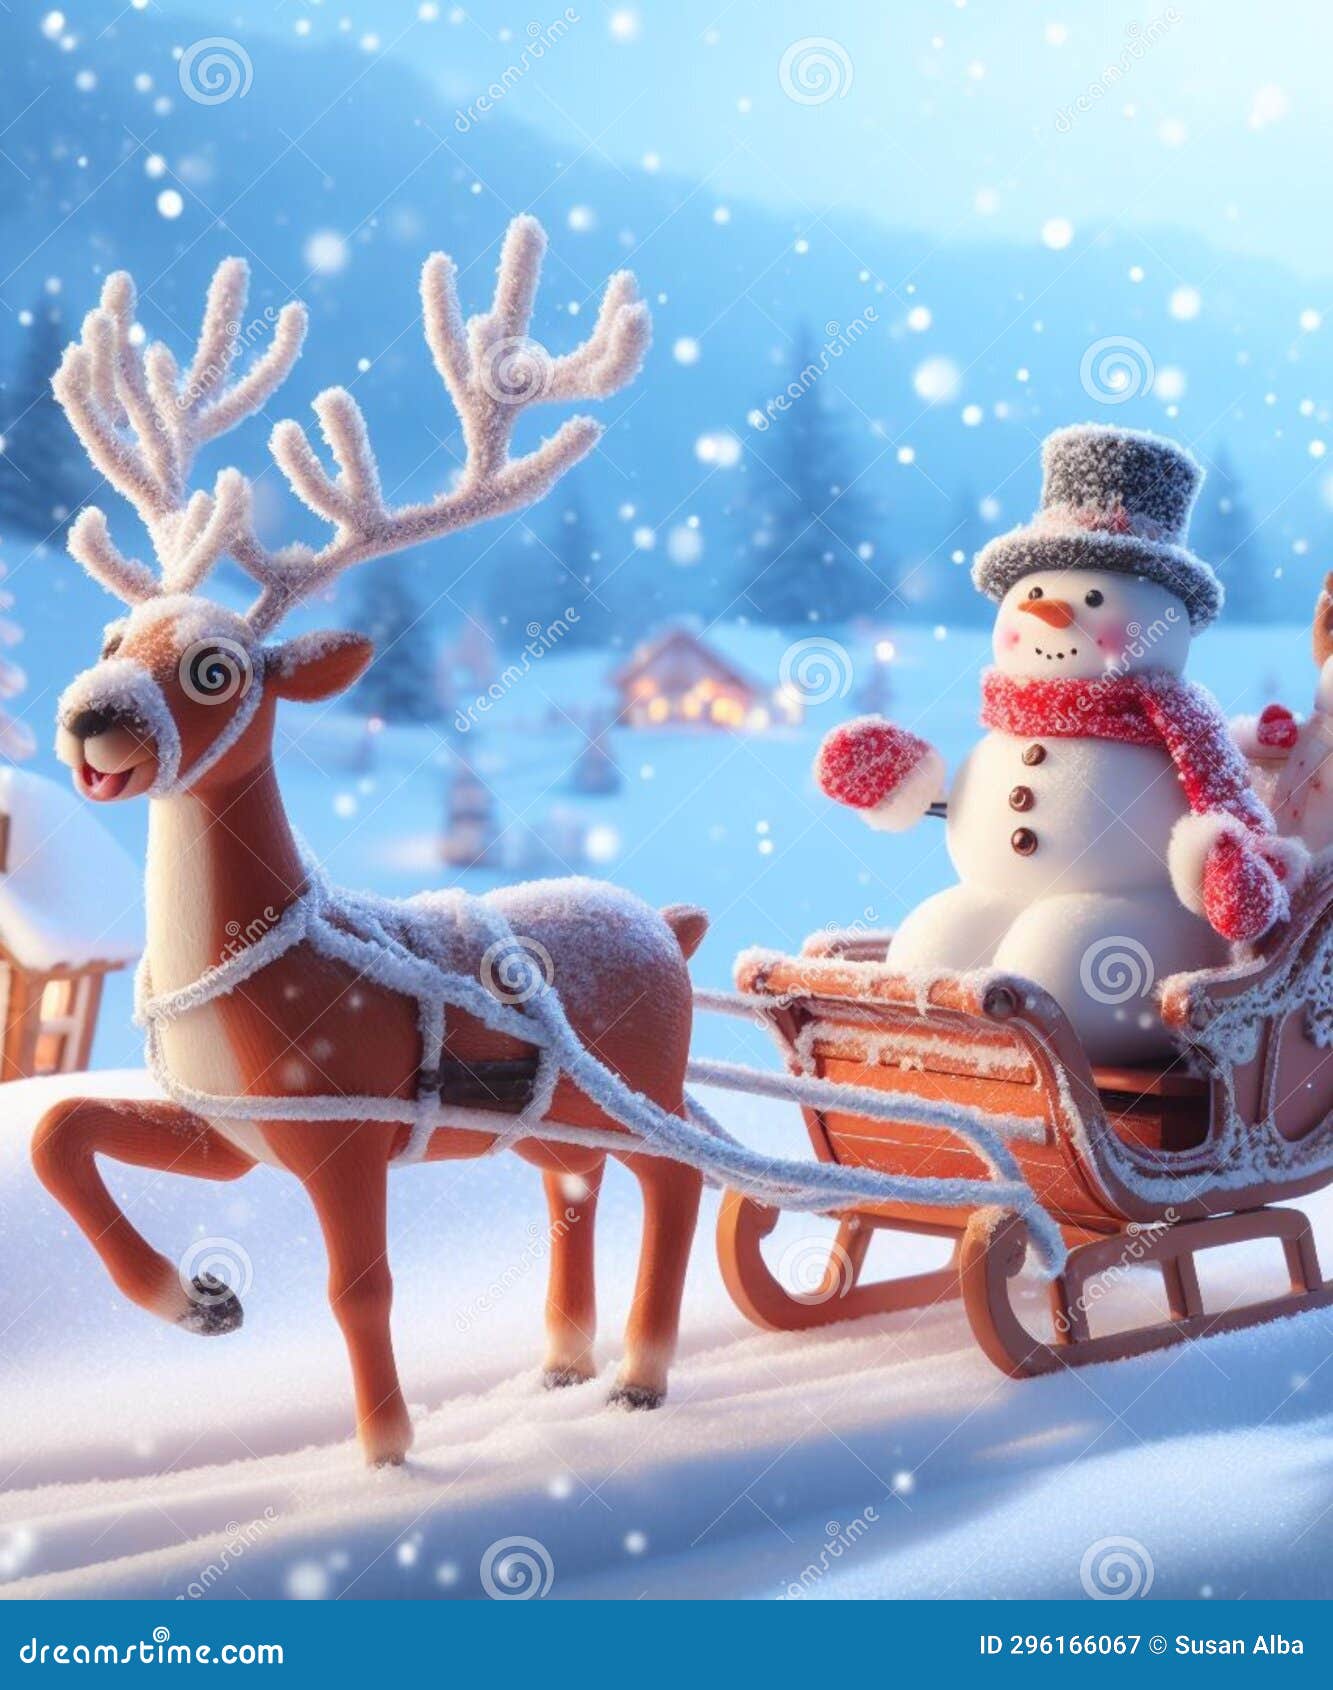 snowman drives a sleigh